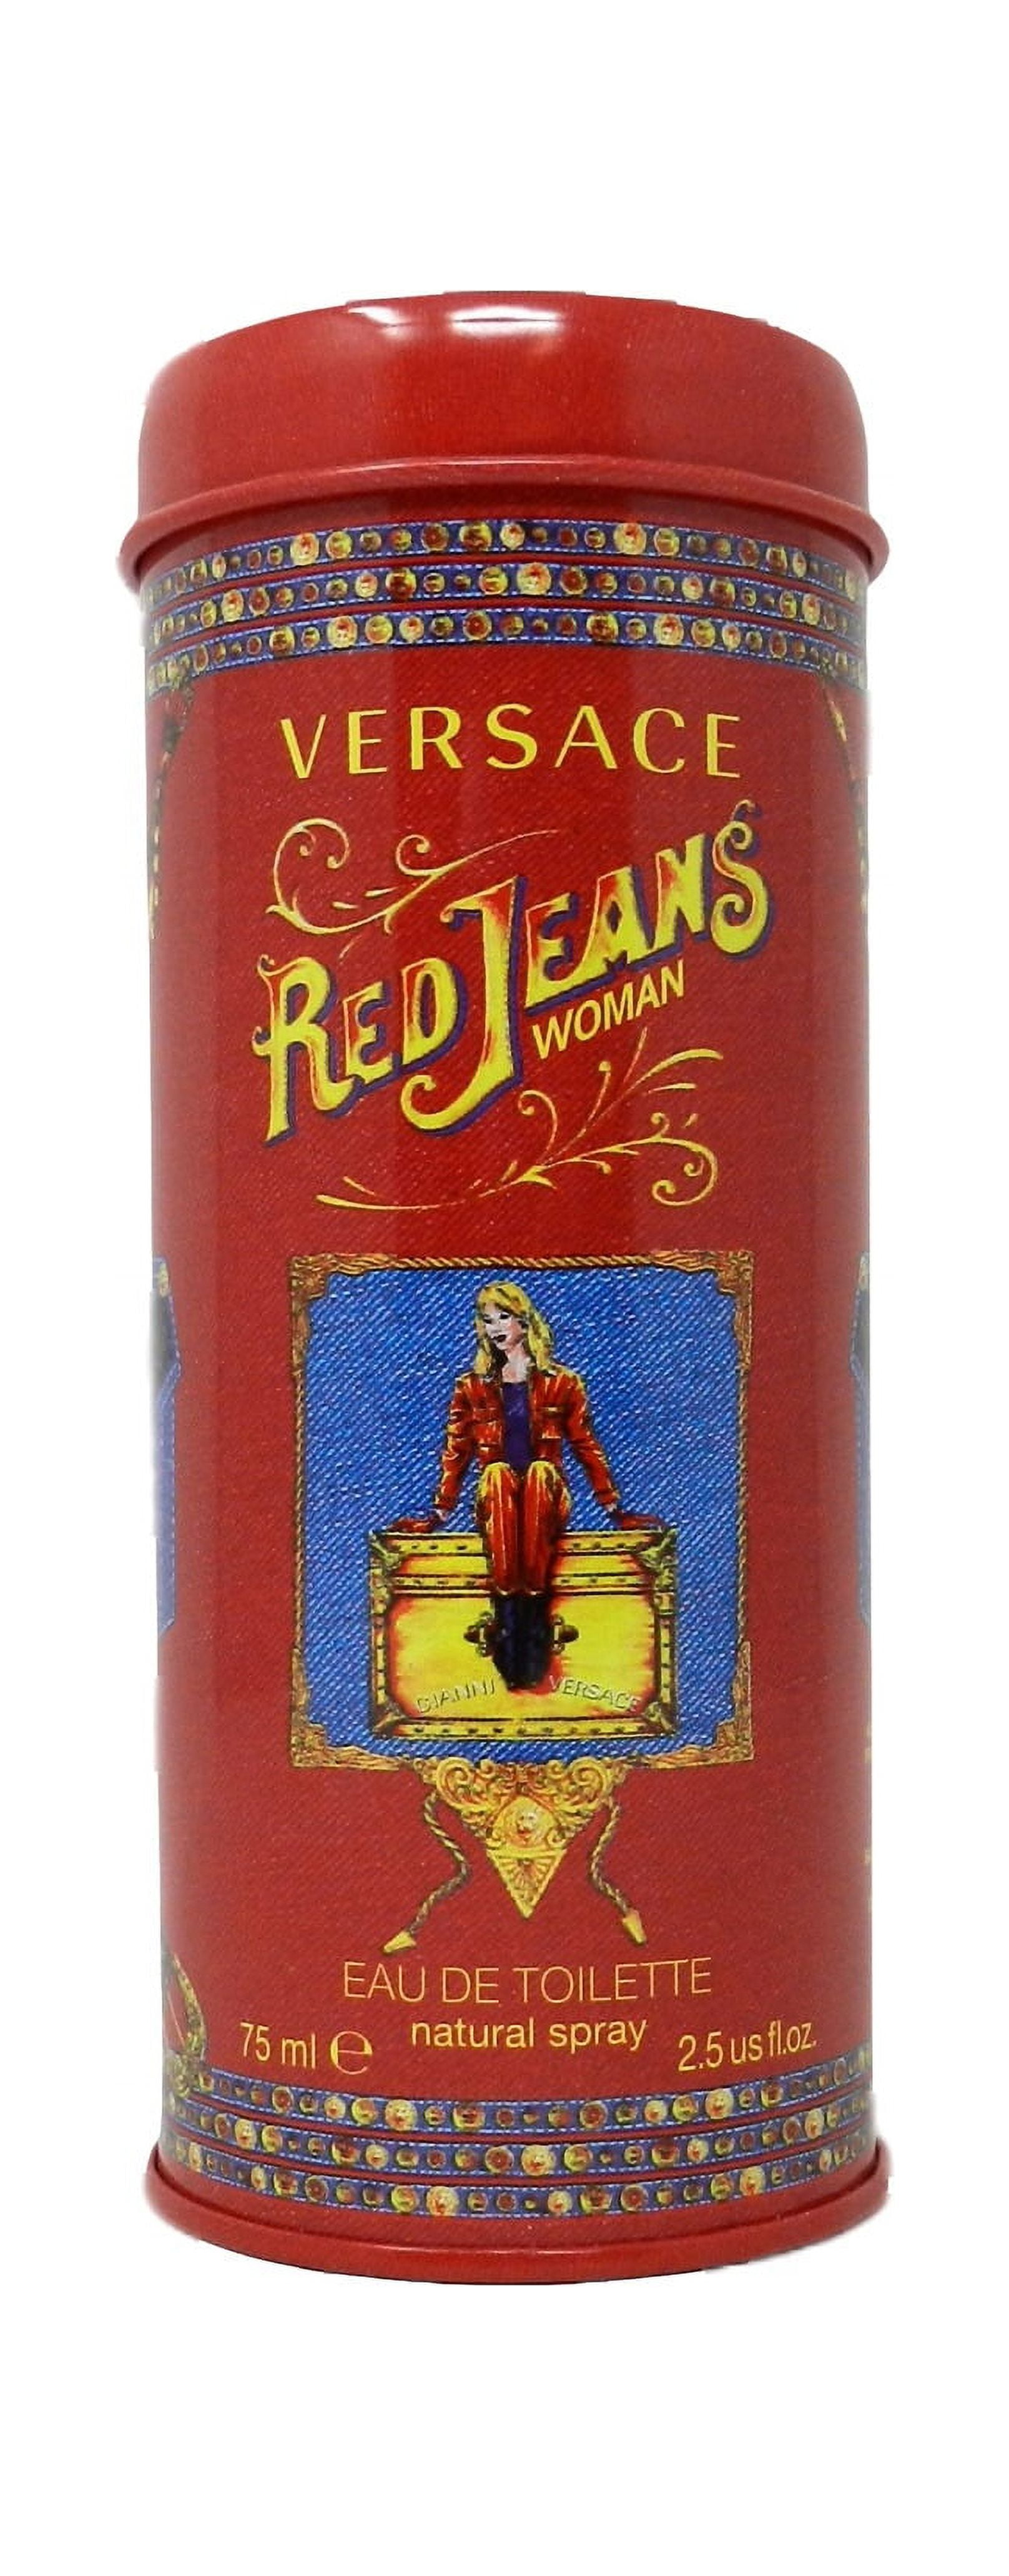 Versace Red Jeans Eau de Toilette, Perfume for Women, 2.5 oz